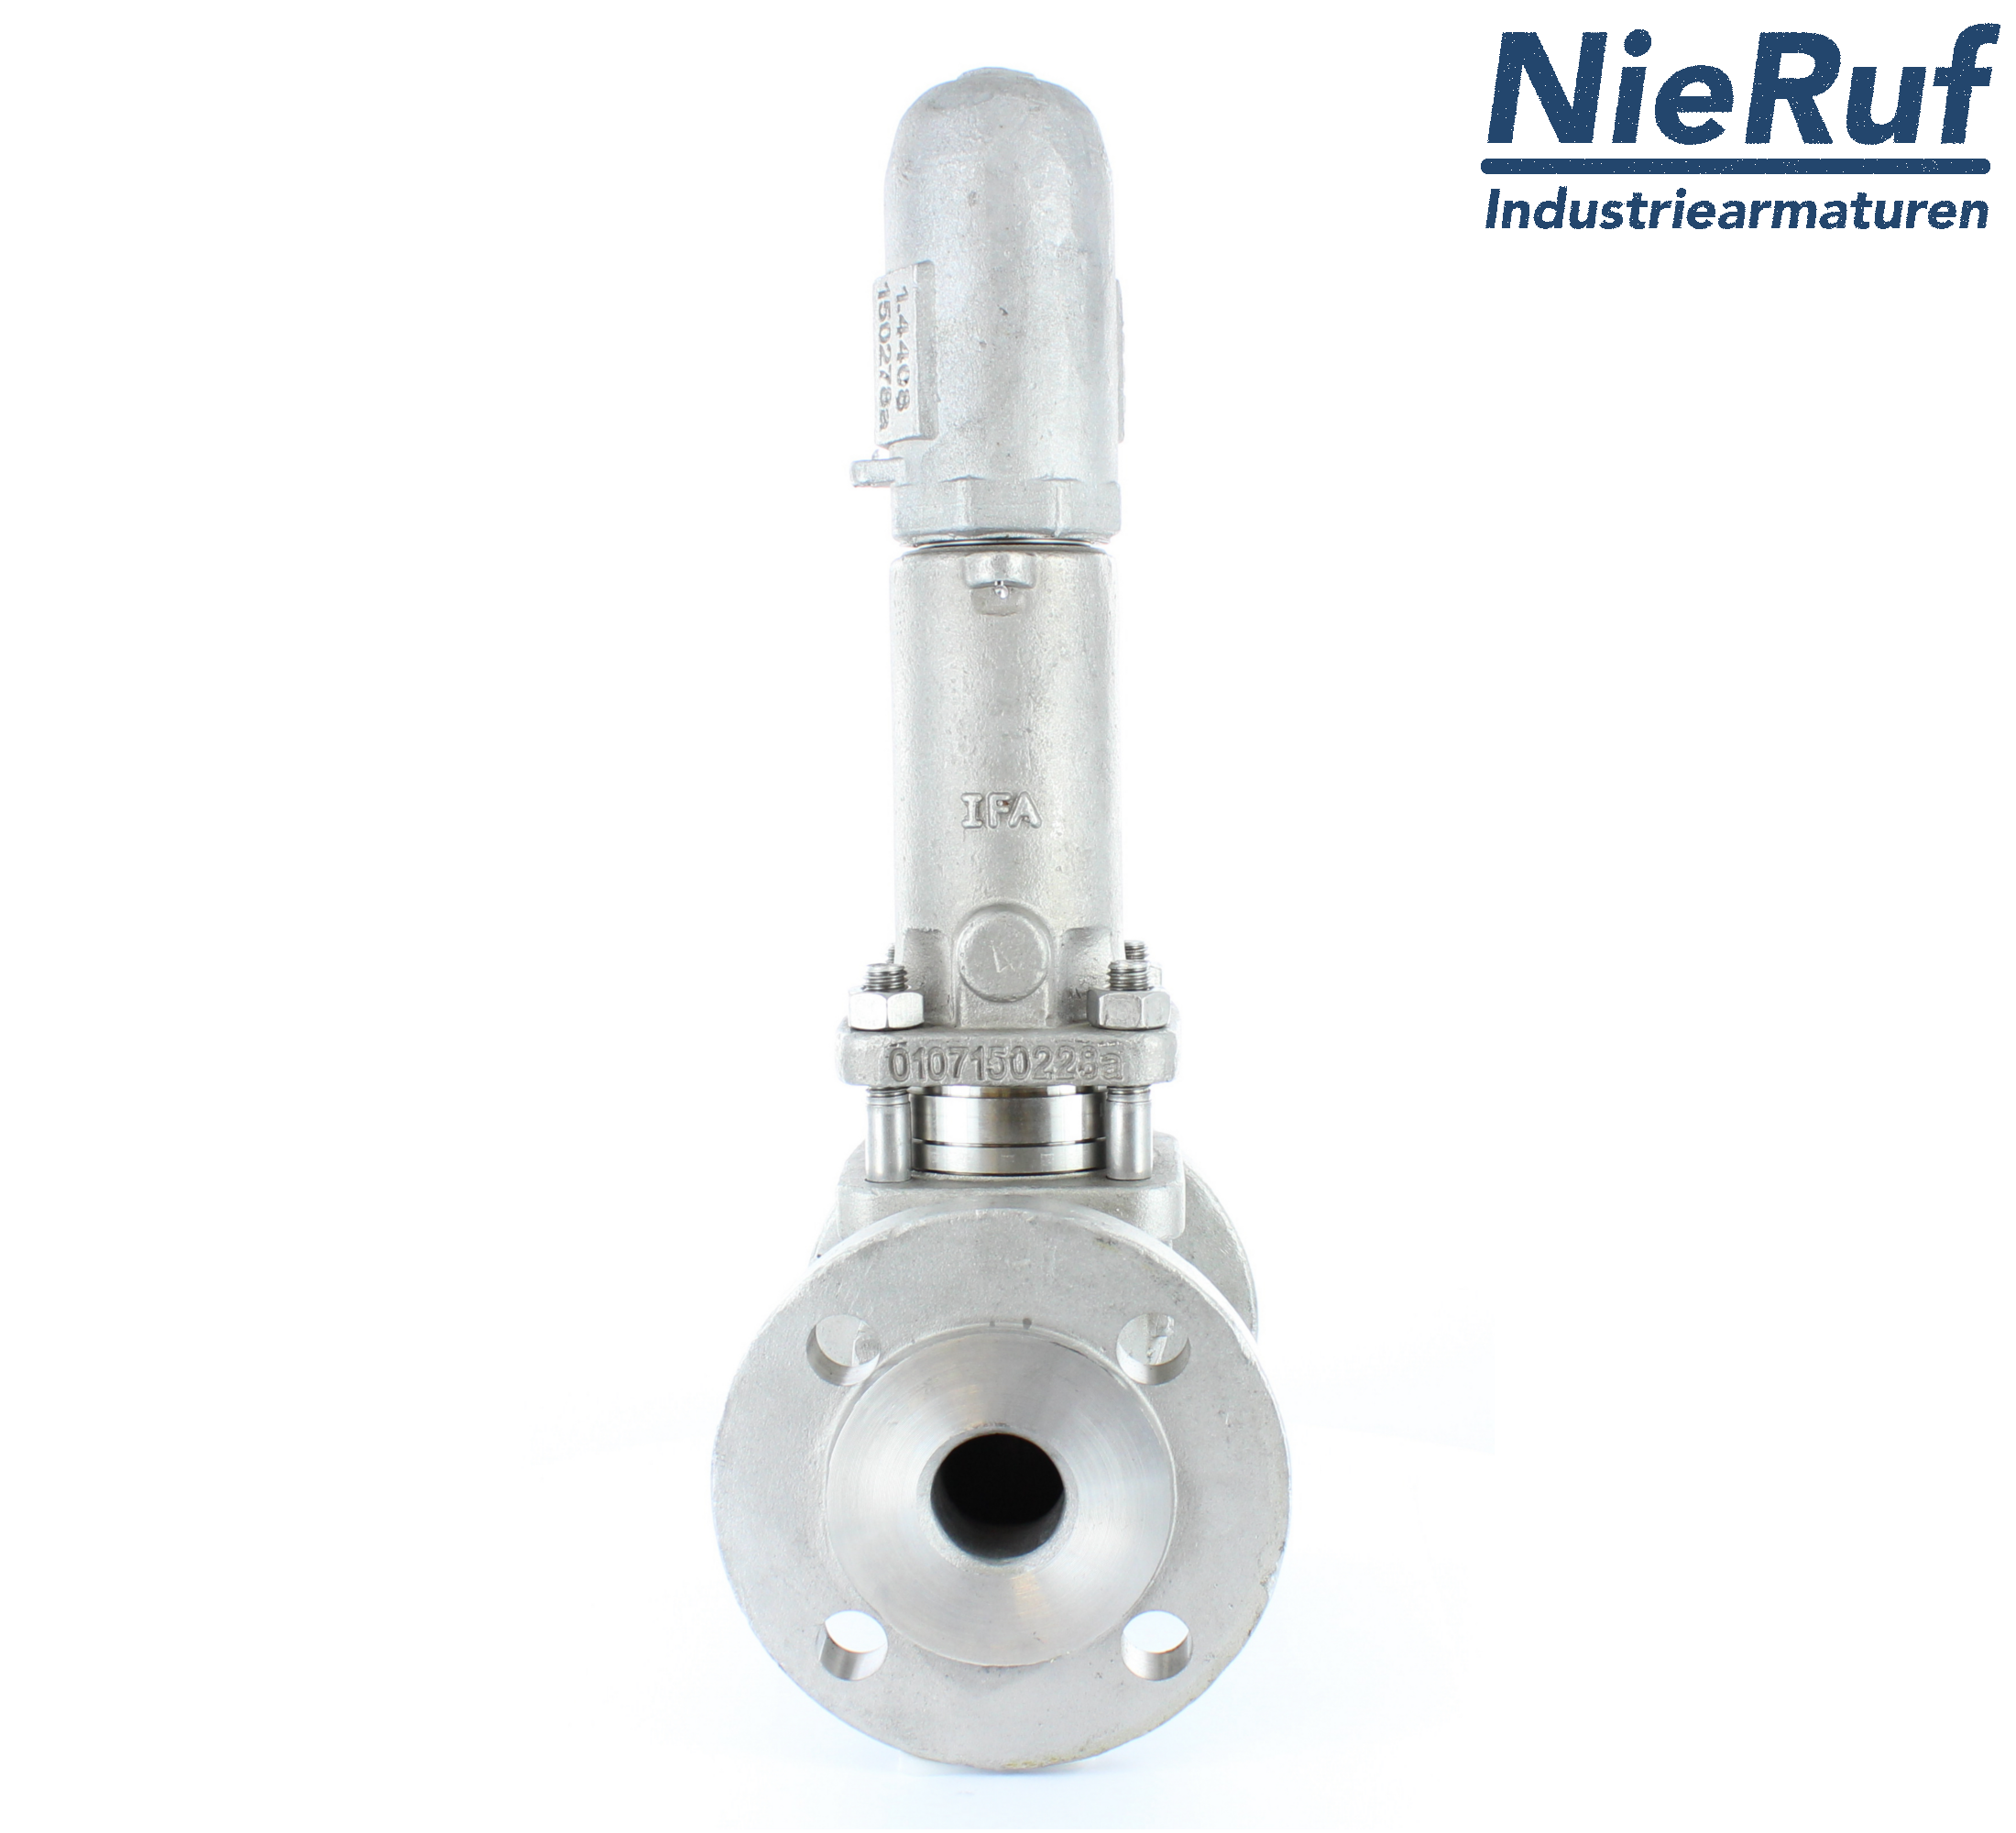 piston overflow valve DN 25 UV13 cast iron 1.0619+N 2,0 - 5,0 bar